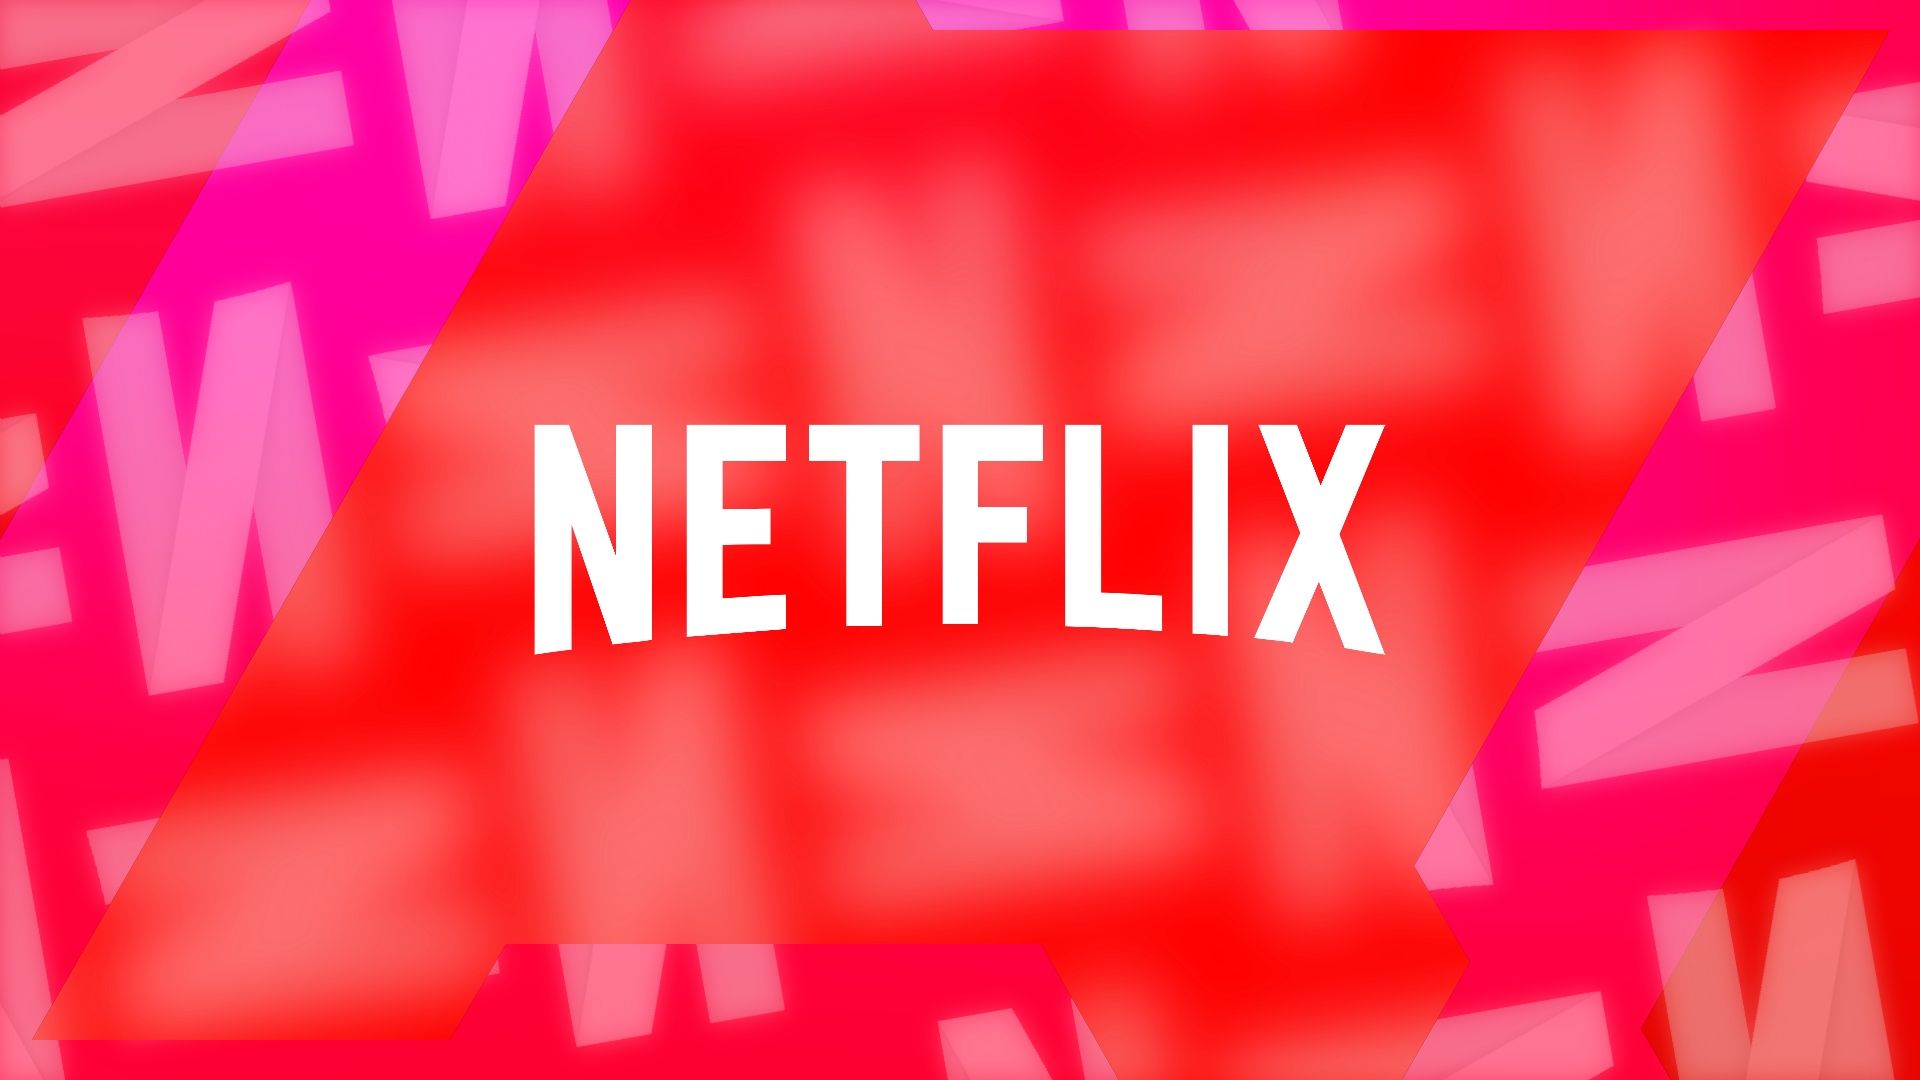 Sex Education, Naruto Shippuden e mais: todas as estreias da Netflix em  setembro de 2023